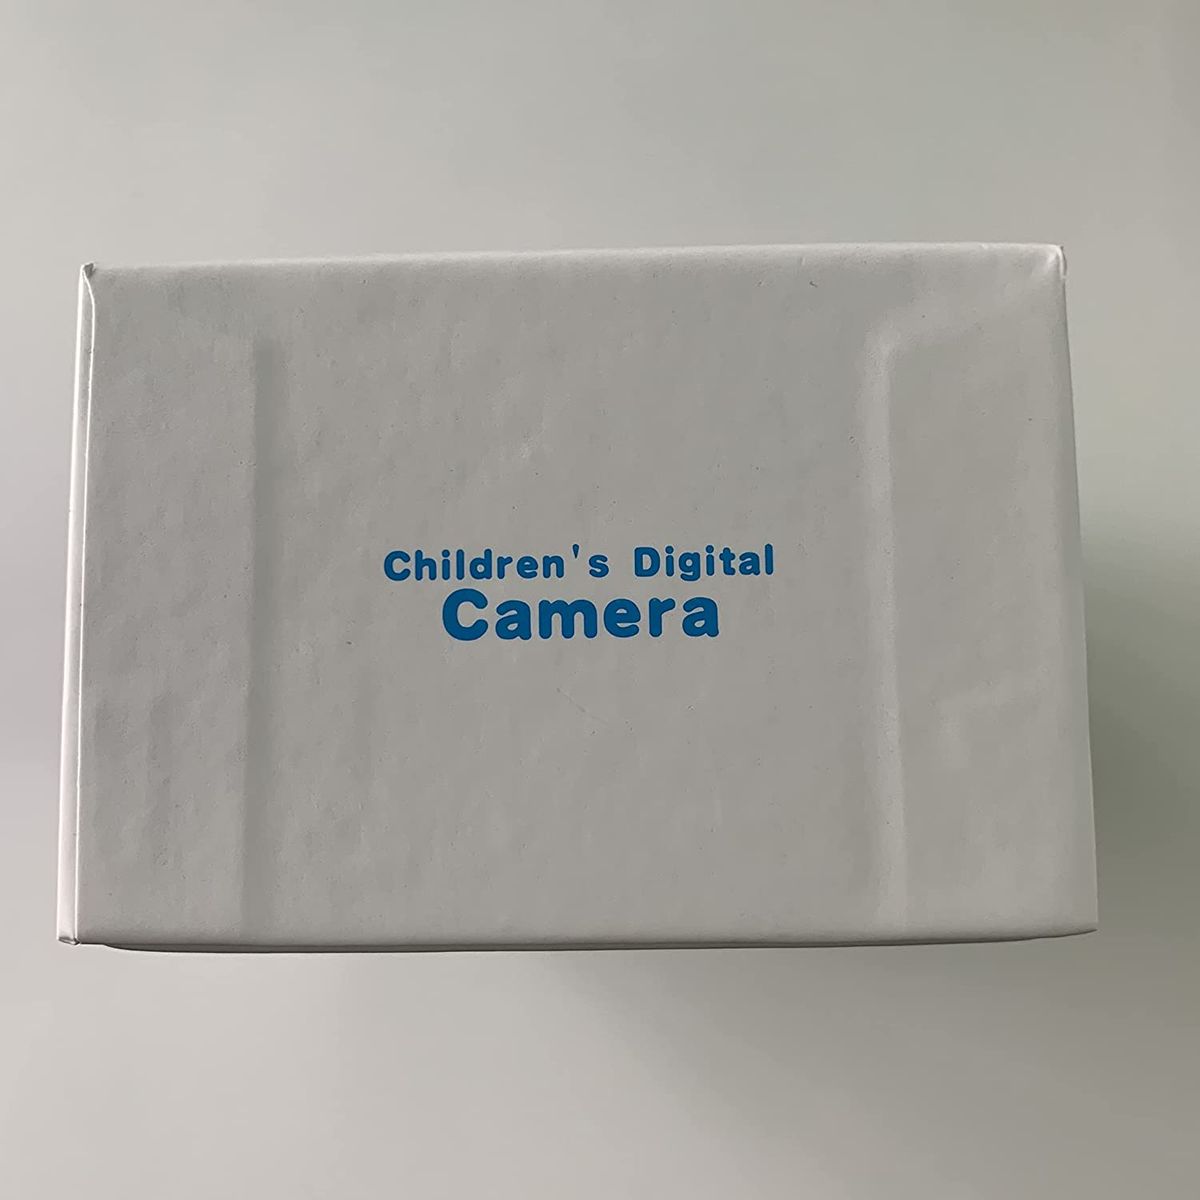 GlobalCrown Kinder Kamera,Mini wiederaufladbare Kinder Digitalkamera Stoßfeste Video Camcorder Geschenke für 3-8 Jahre Jungen Mädchen,8MP HD Video 2 Zoll Bildschirm für Kinder (32 GB Karte enthalten) Blau